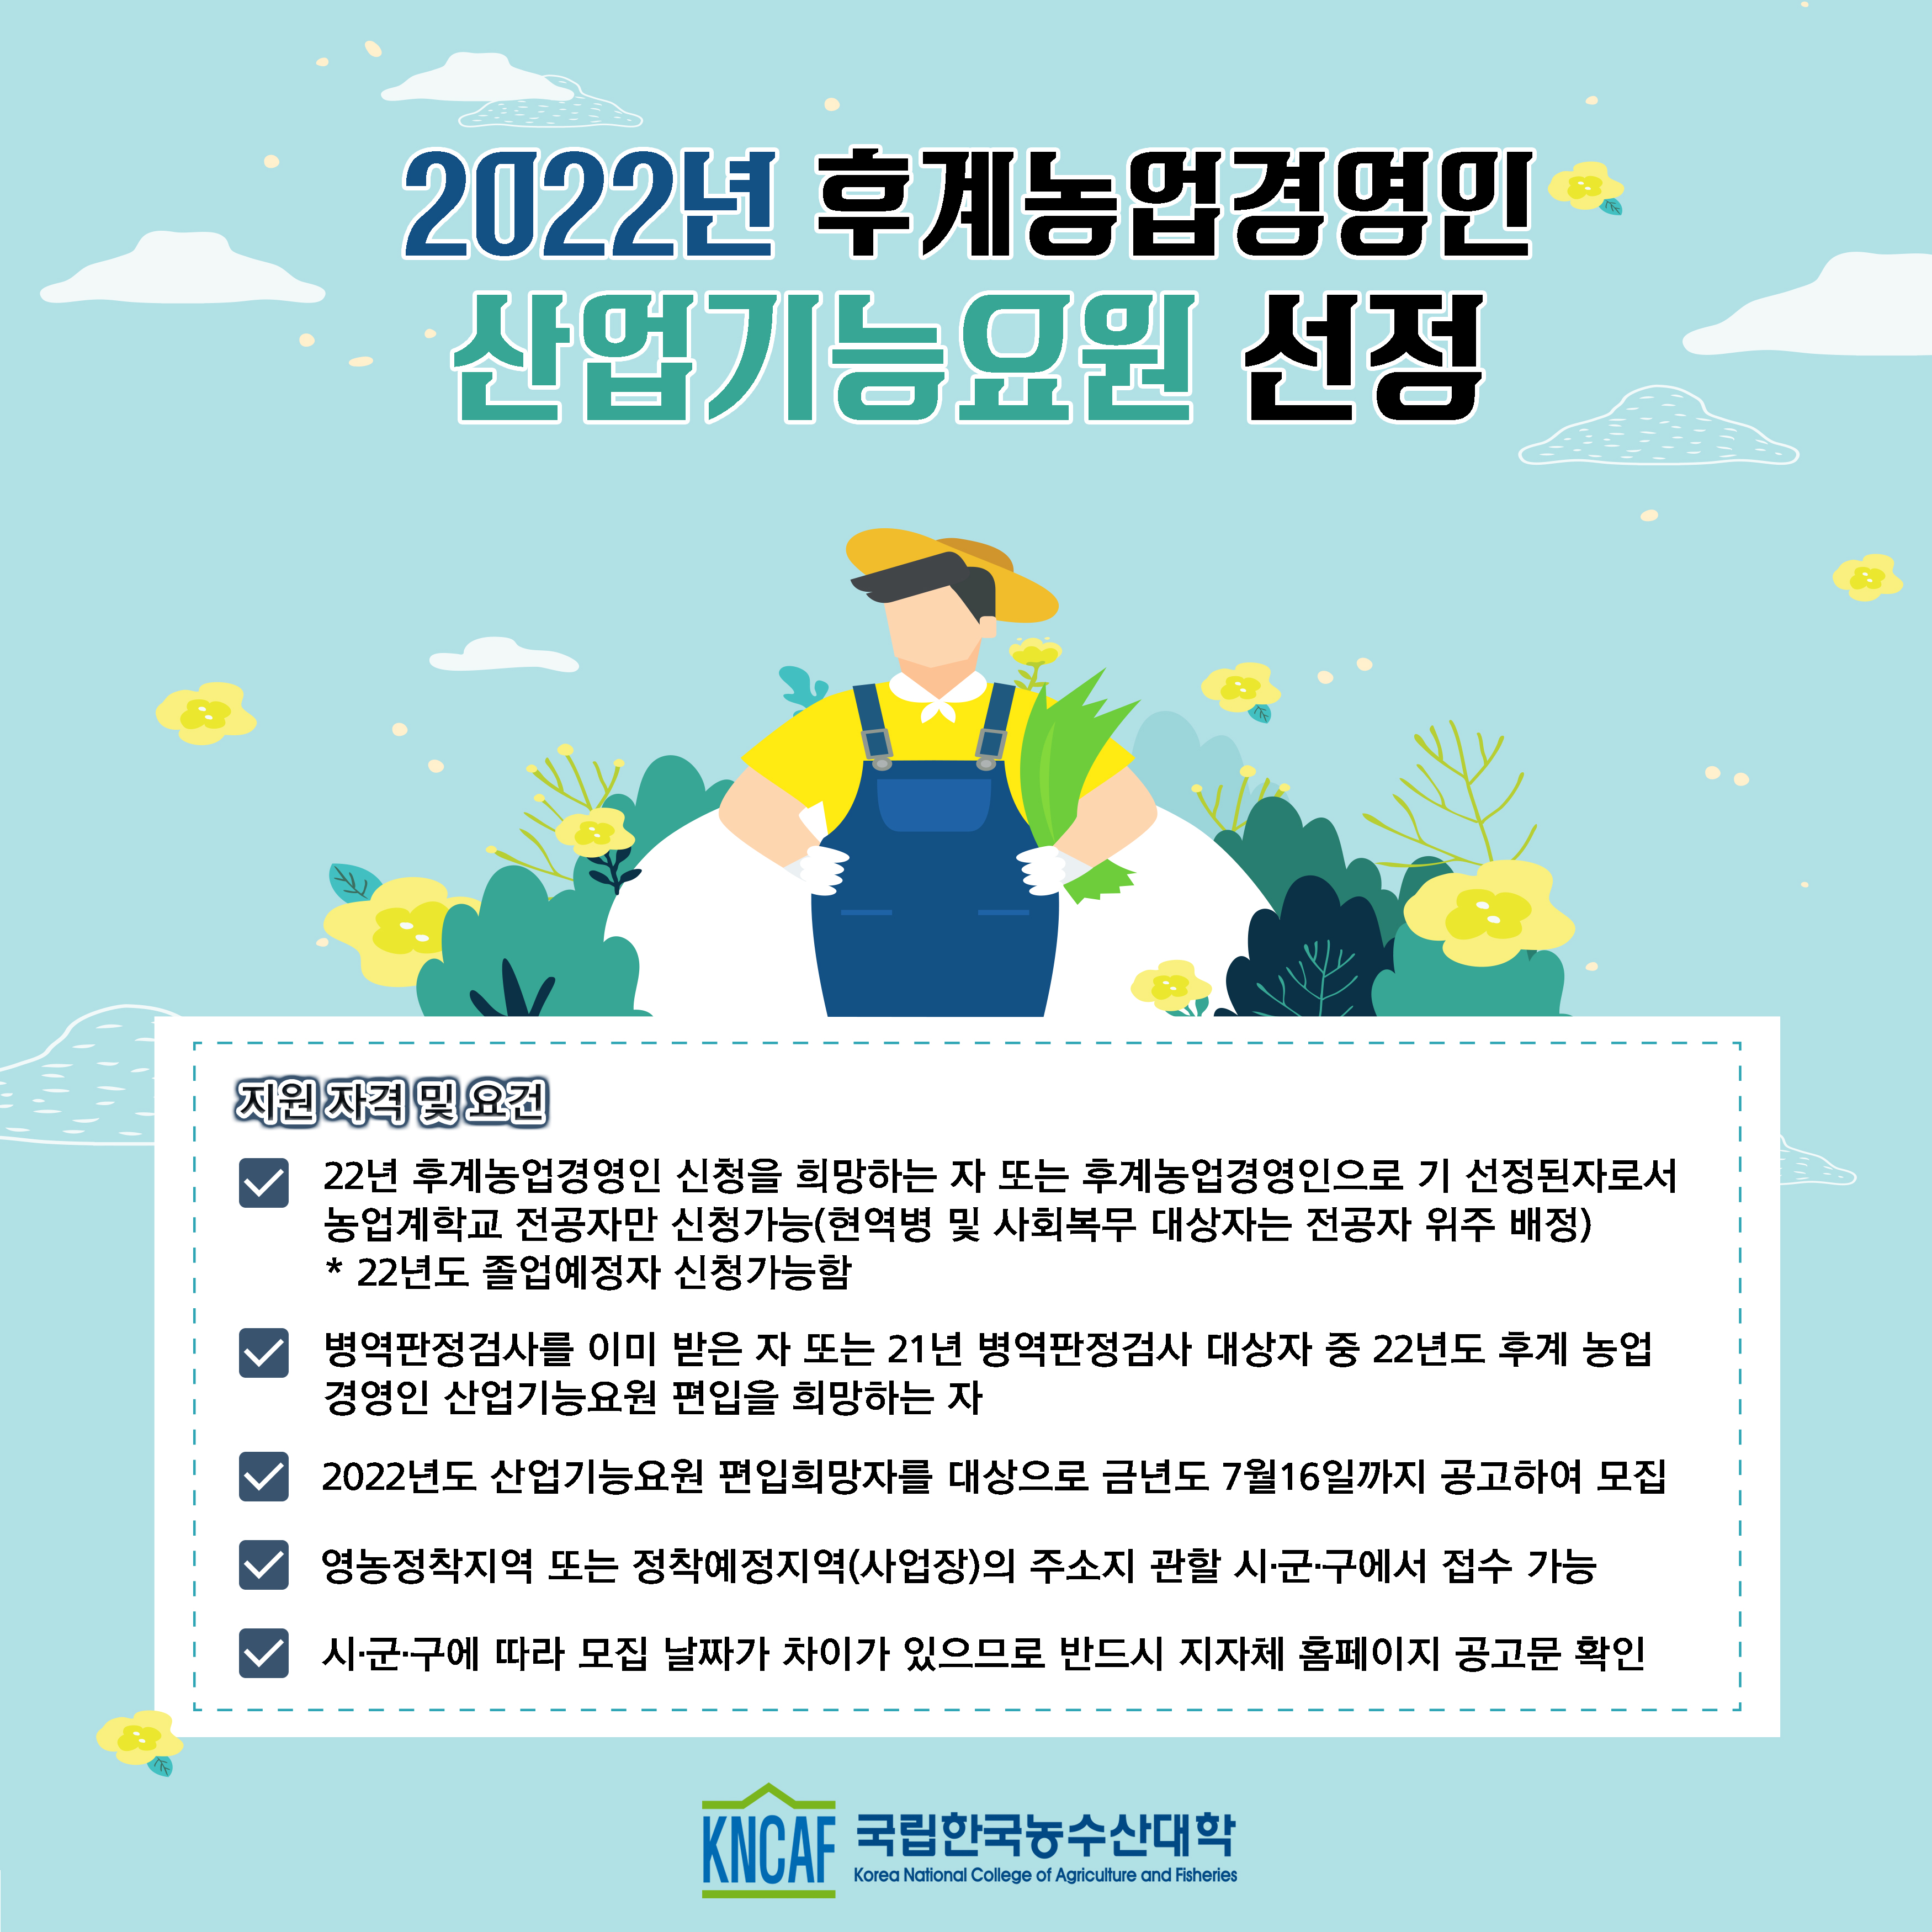  2022년 후계농업경영인 산업기능요원 선정 신청